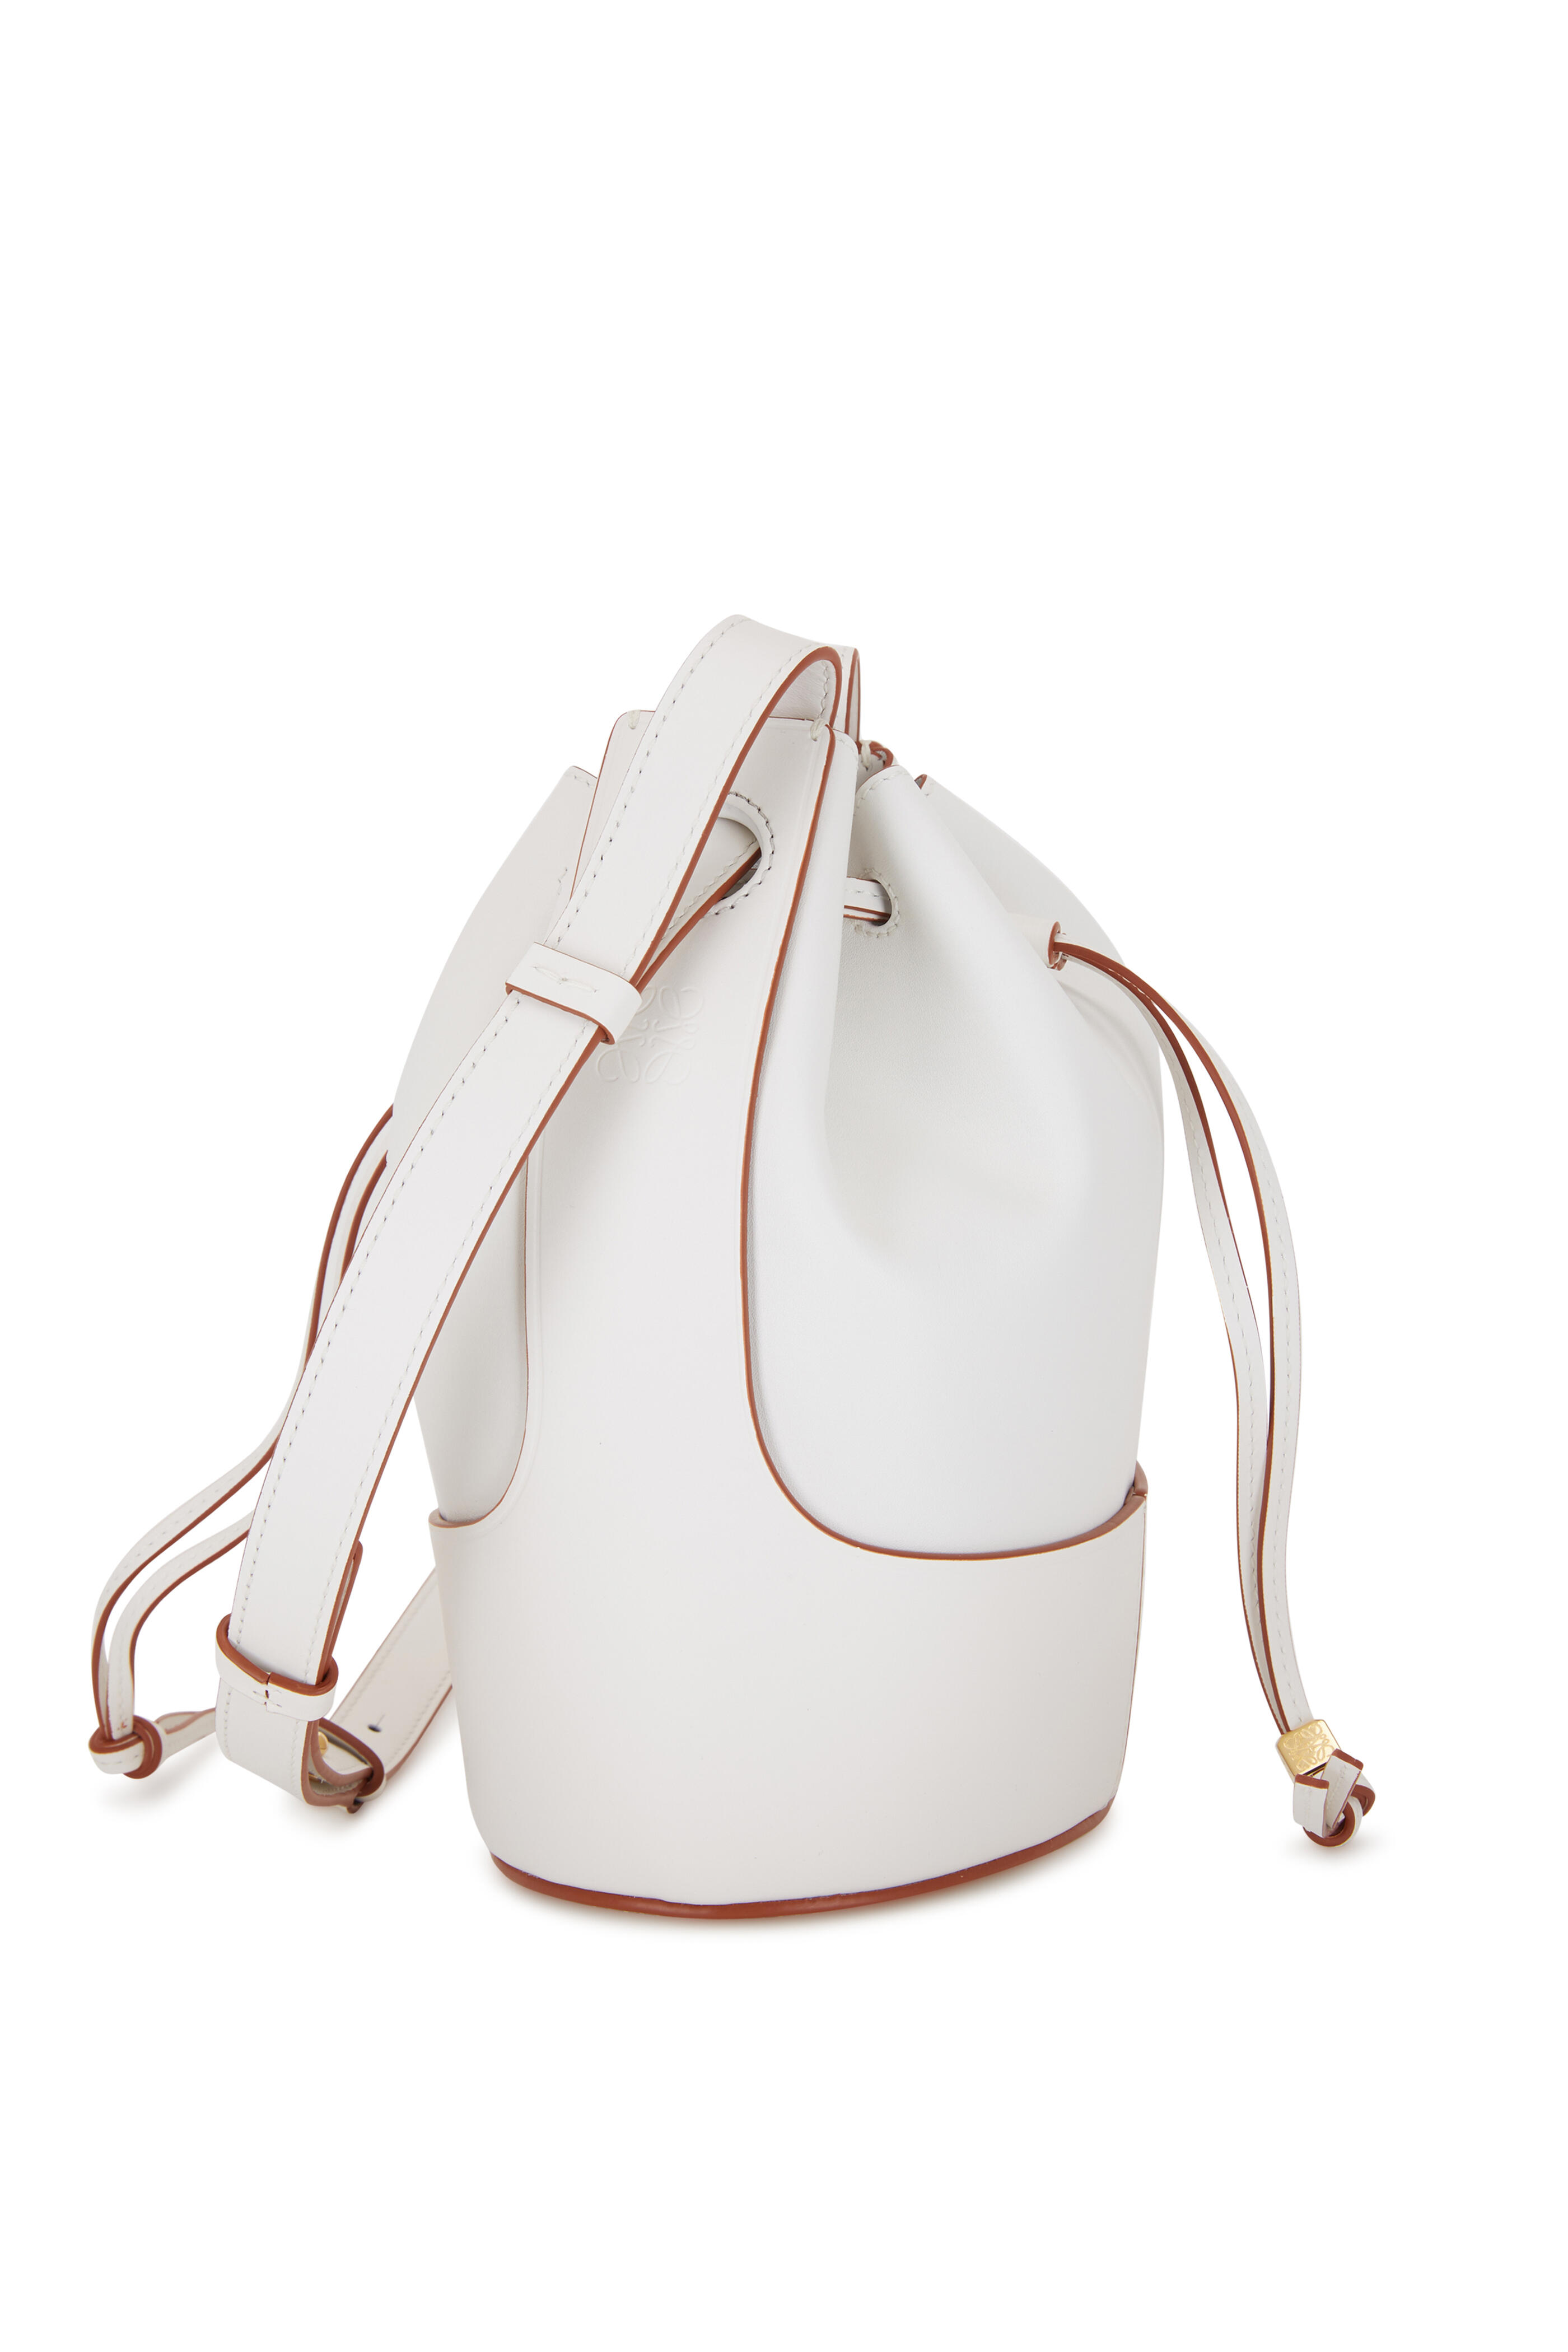 LOEWE white Small Leather Balloon Bucket Bag